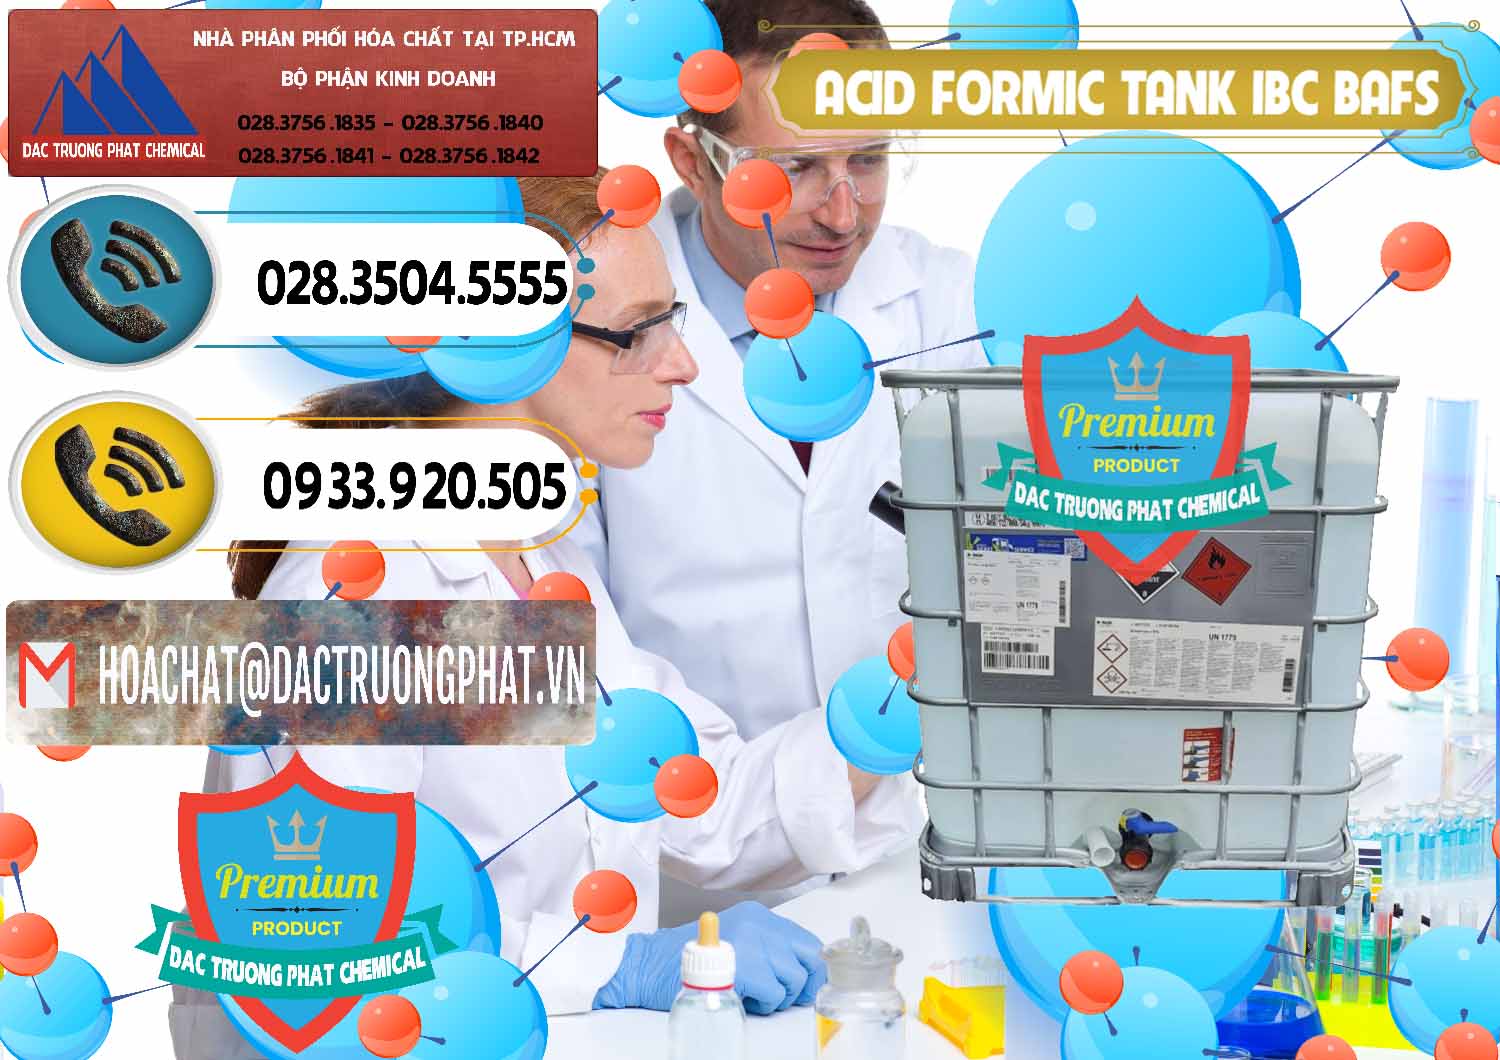 Đơn vị kinh doanh - bán Acid Formic - Axit Formic Tank - Bồn IBC BASF Đức - 0366 - Nơi cung cấp _ bán hóa chất tại TP.HCM - hoachatdetnhuom.vn